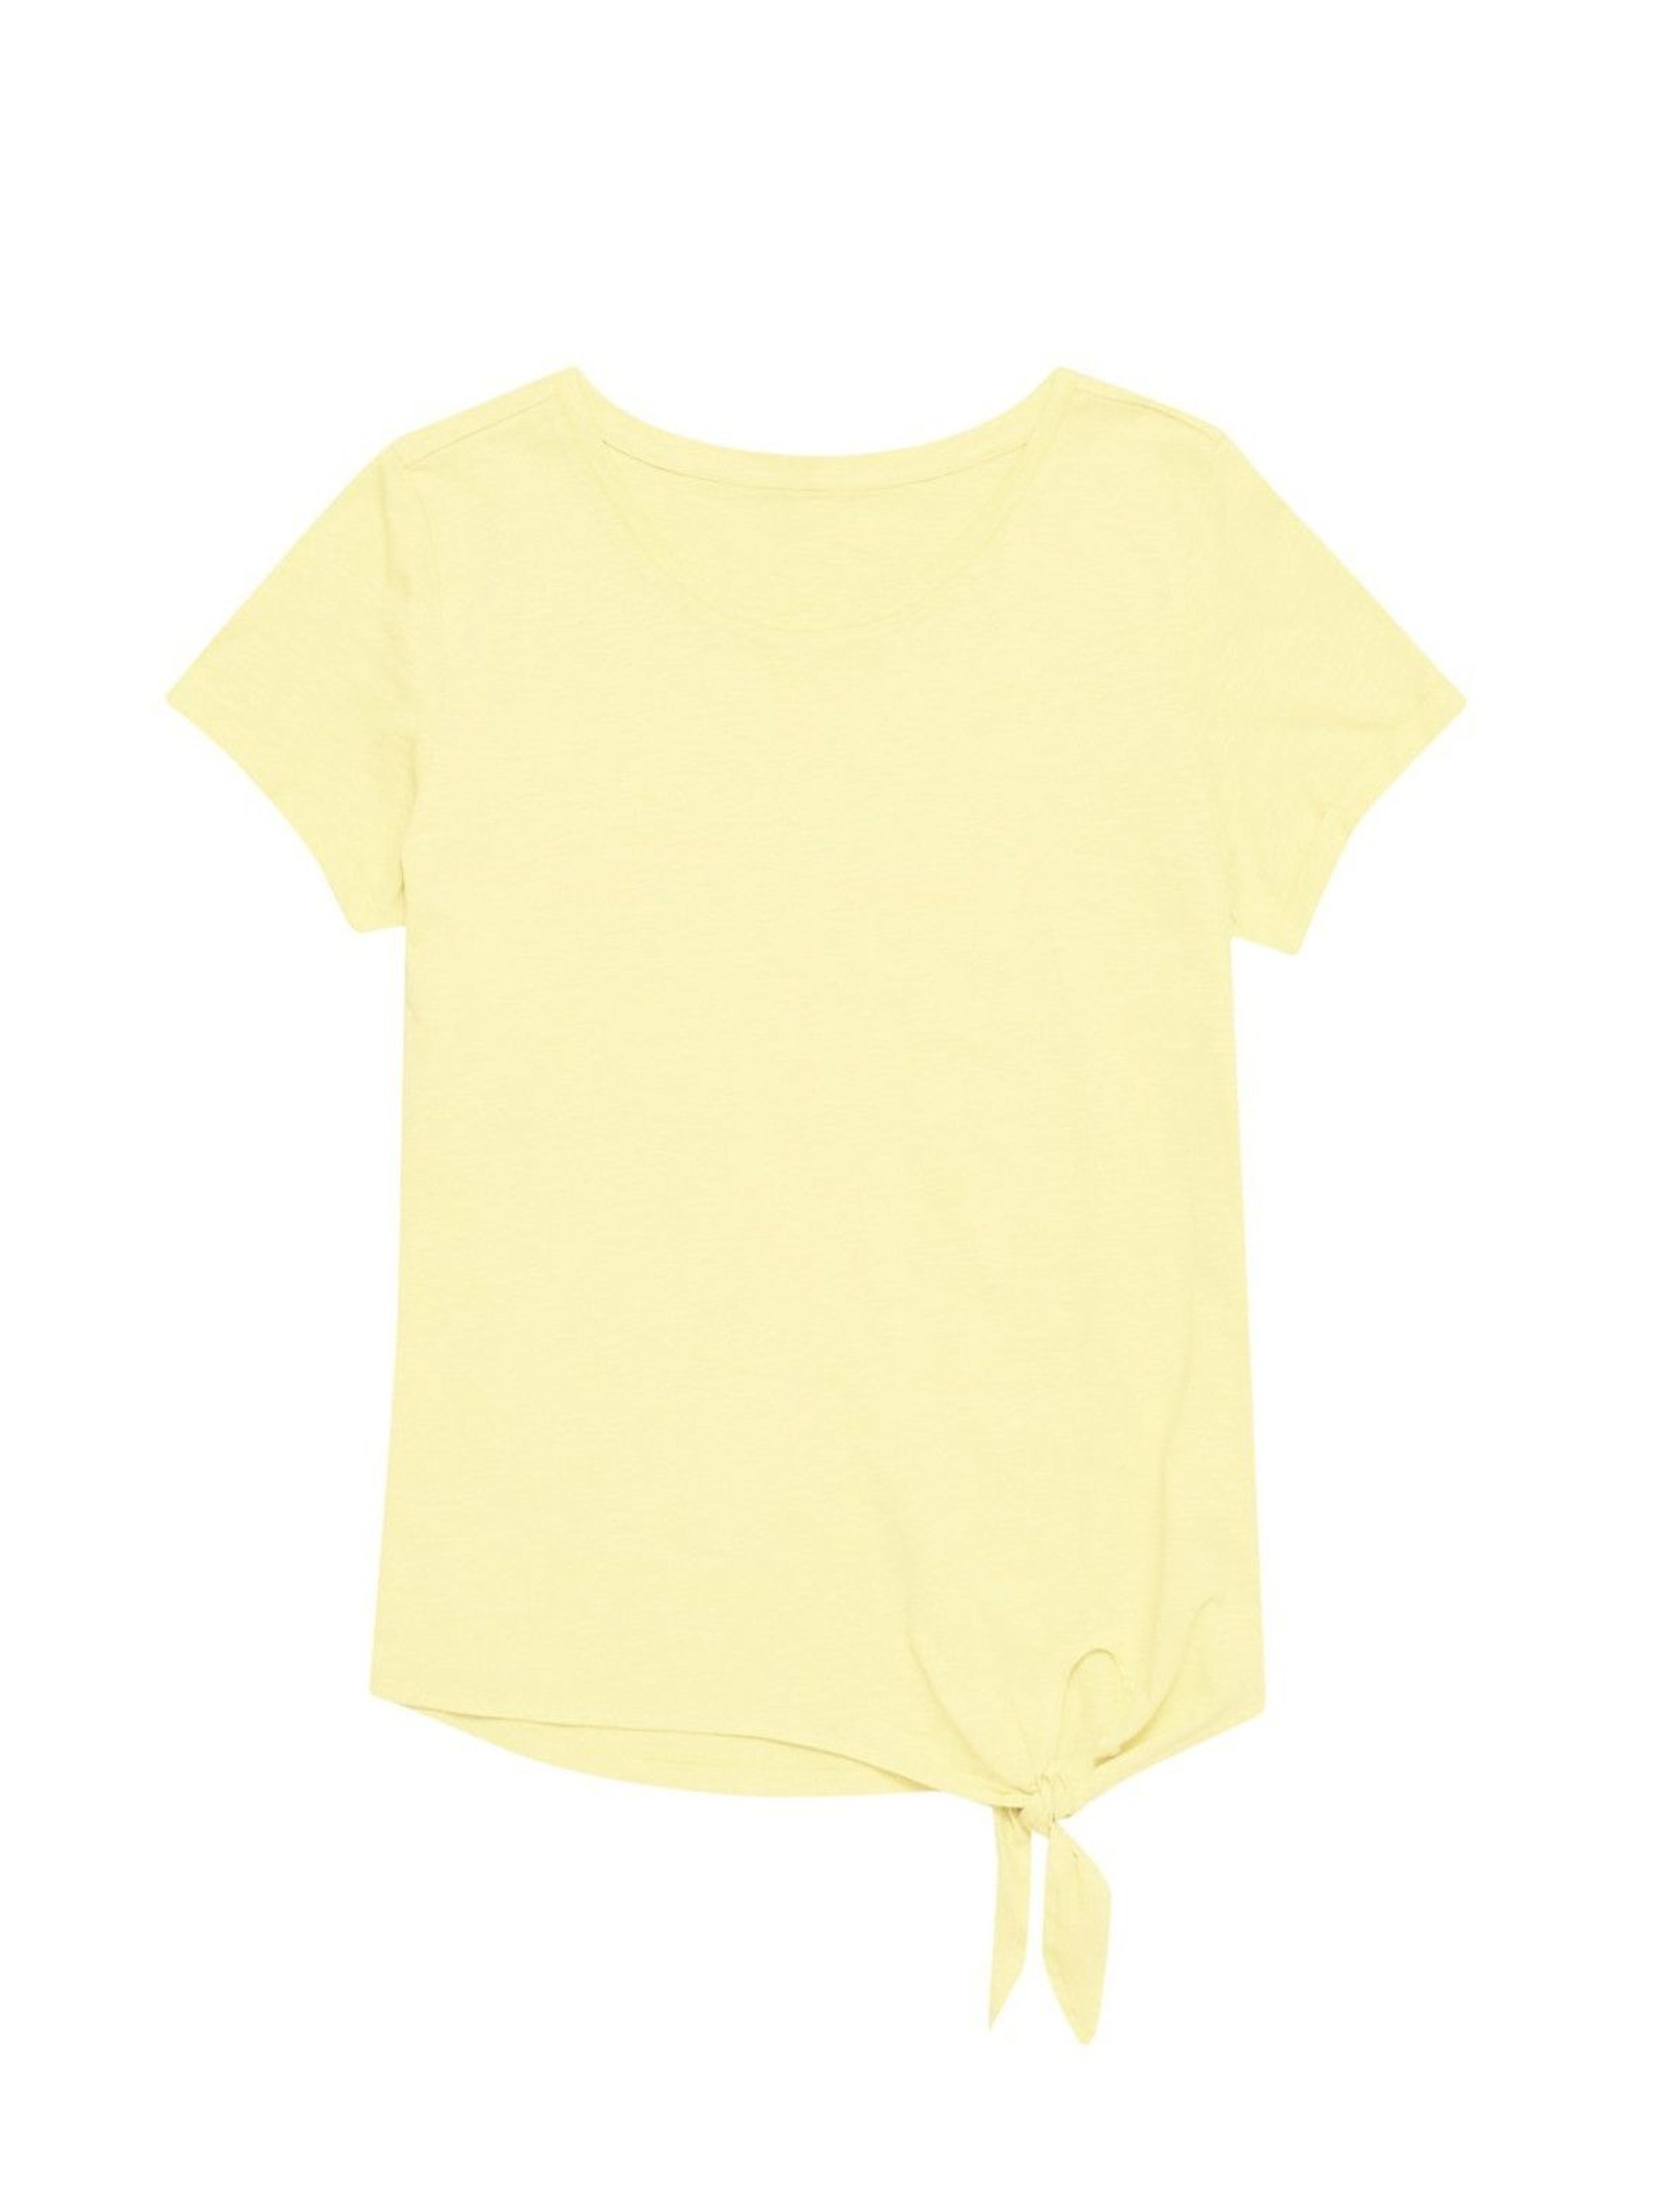 Bawełniany żółty T-shirt damski na krótki rękaw z ozdobnym wiązaniem